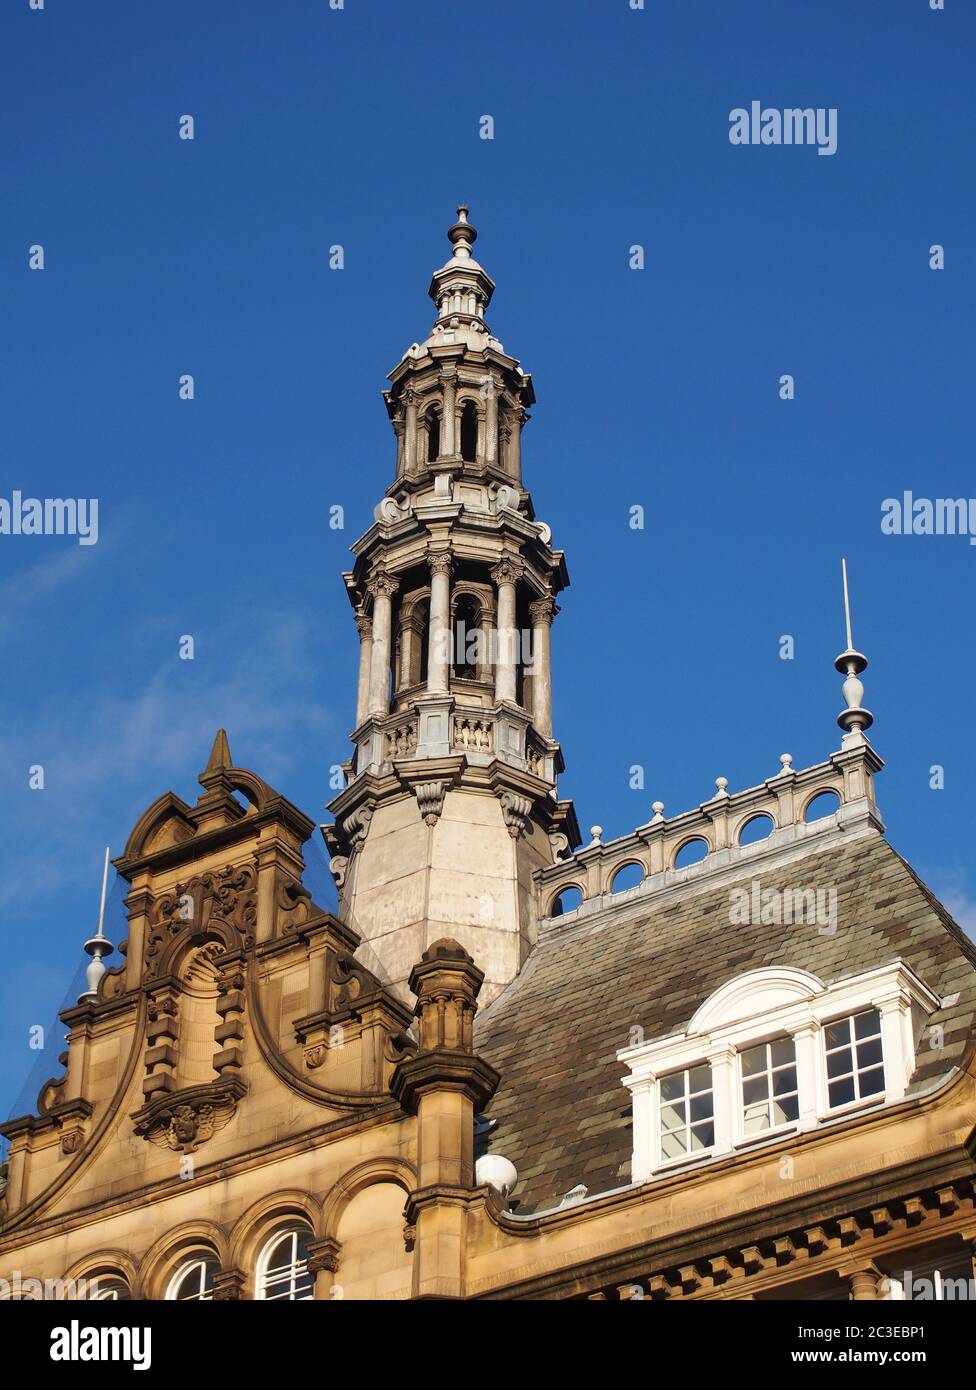 torres de piedra ornamentada y cúpulas en el techo de la ciudad de leeds mercado un edificio histórico en el oeste de yorkshire inglaterra Foto de stock